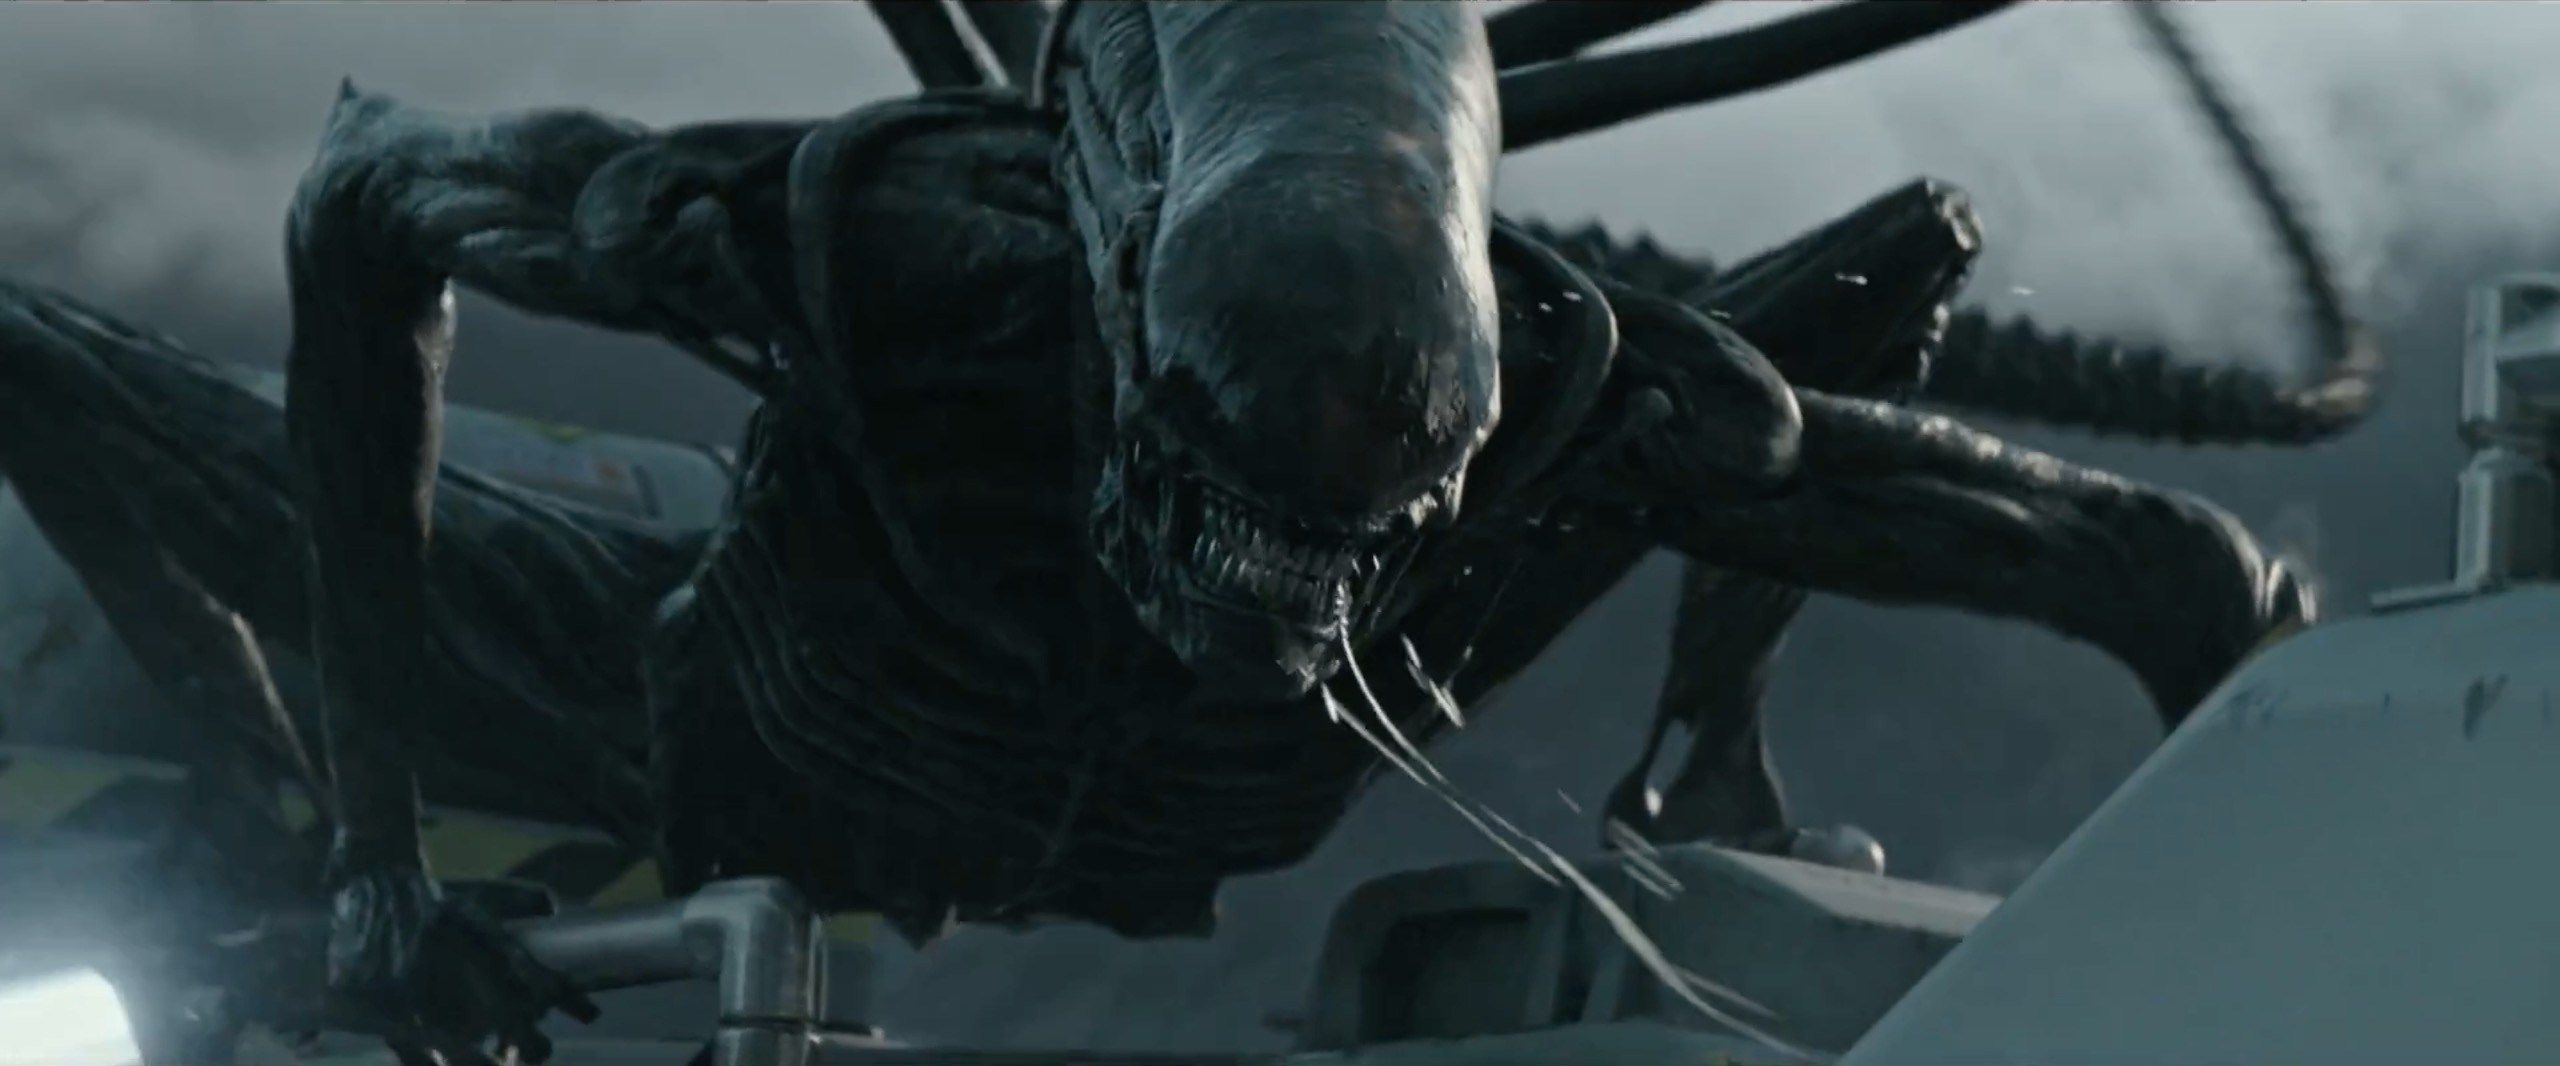 Tairgeann ‘Alien: Covenant’ Thrills Cheap, agus tá an chuid eile spás folamh